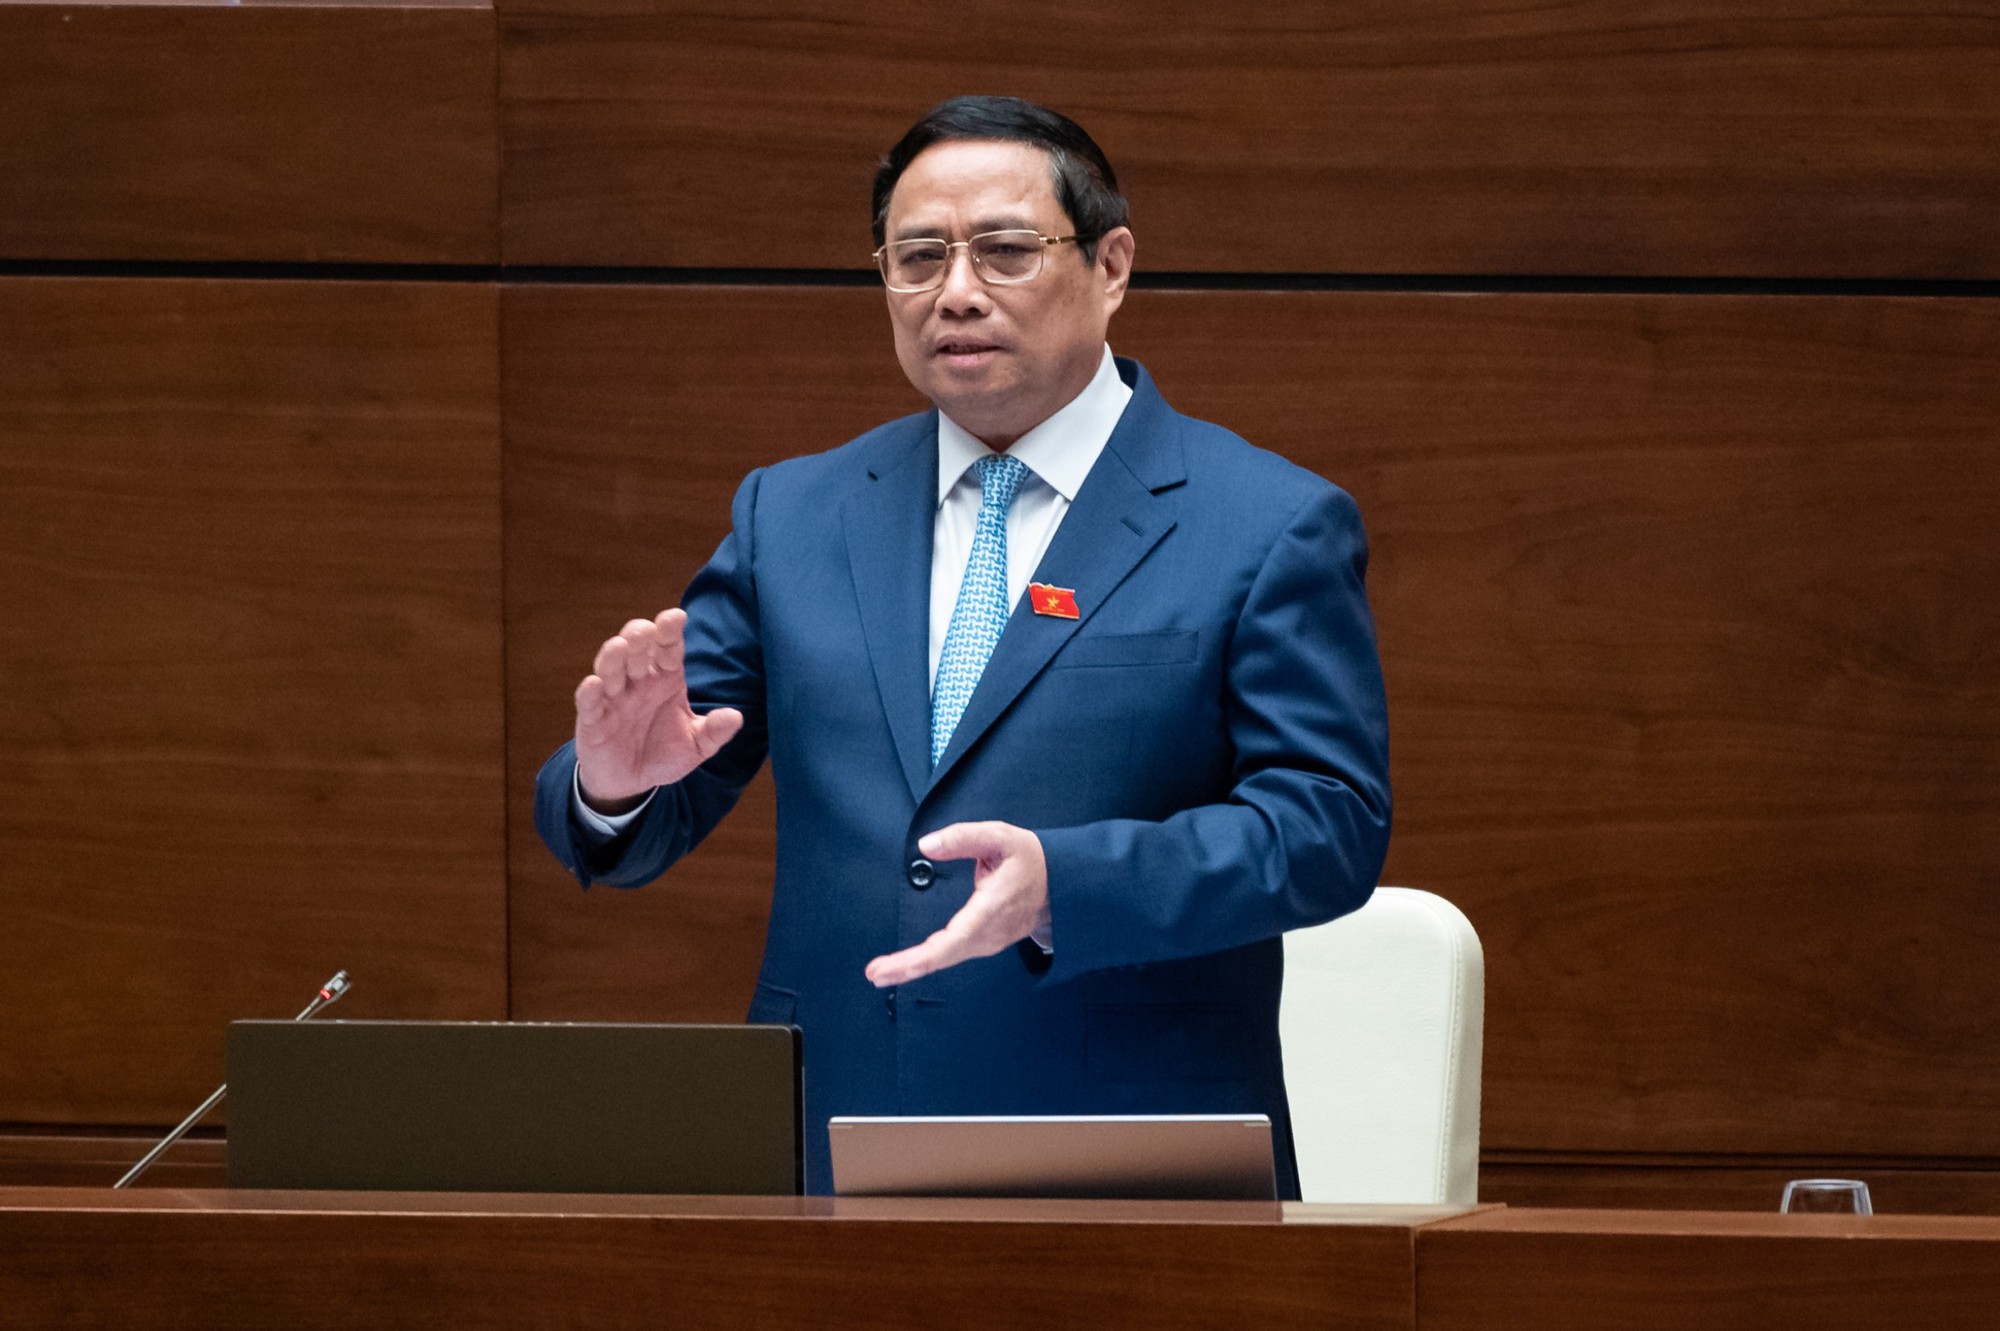 Thủ tướng Phạm Minh Chính: Chúng tôi nhận khuyết điểm việc chưa hoàn thành Nghị quyết Trung ương giao - Ảnh 1.